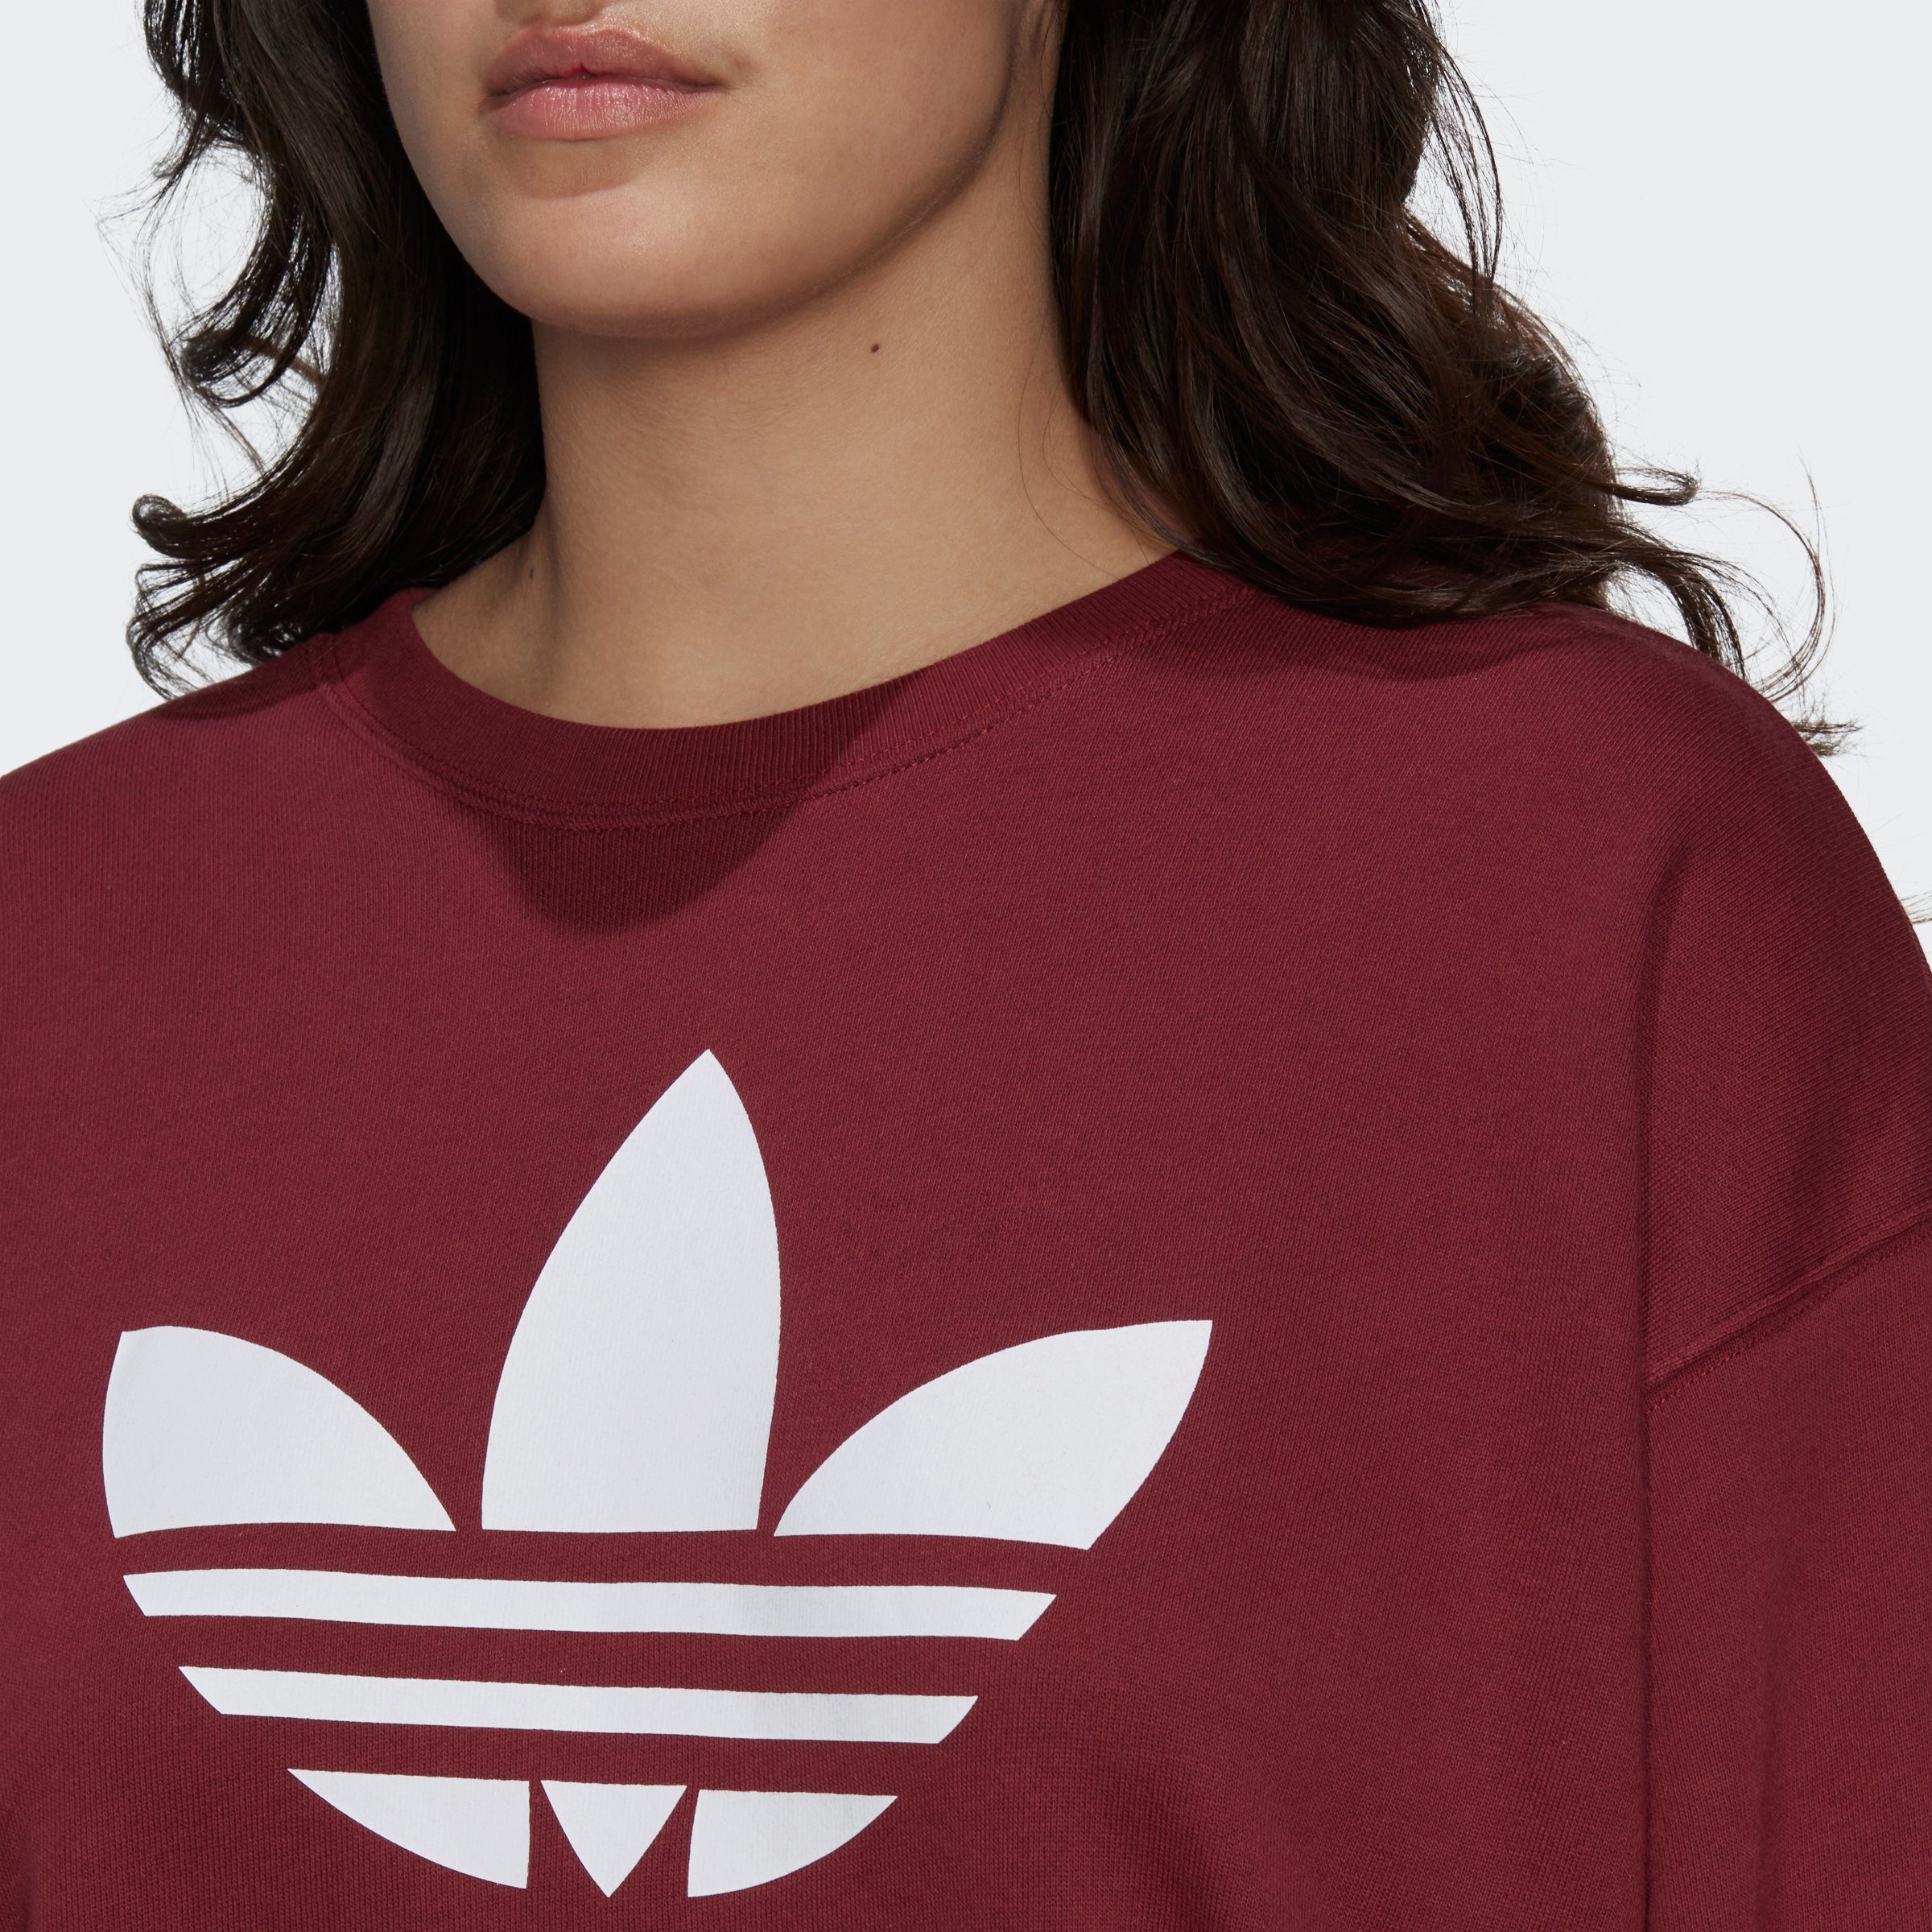 – GRÖSSEN adidas TREFOIL GROSSE Originals Red Sweatshirt Shadow